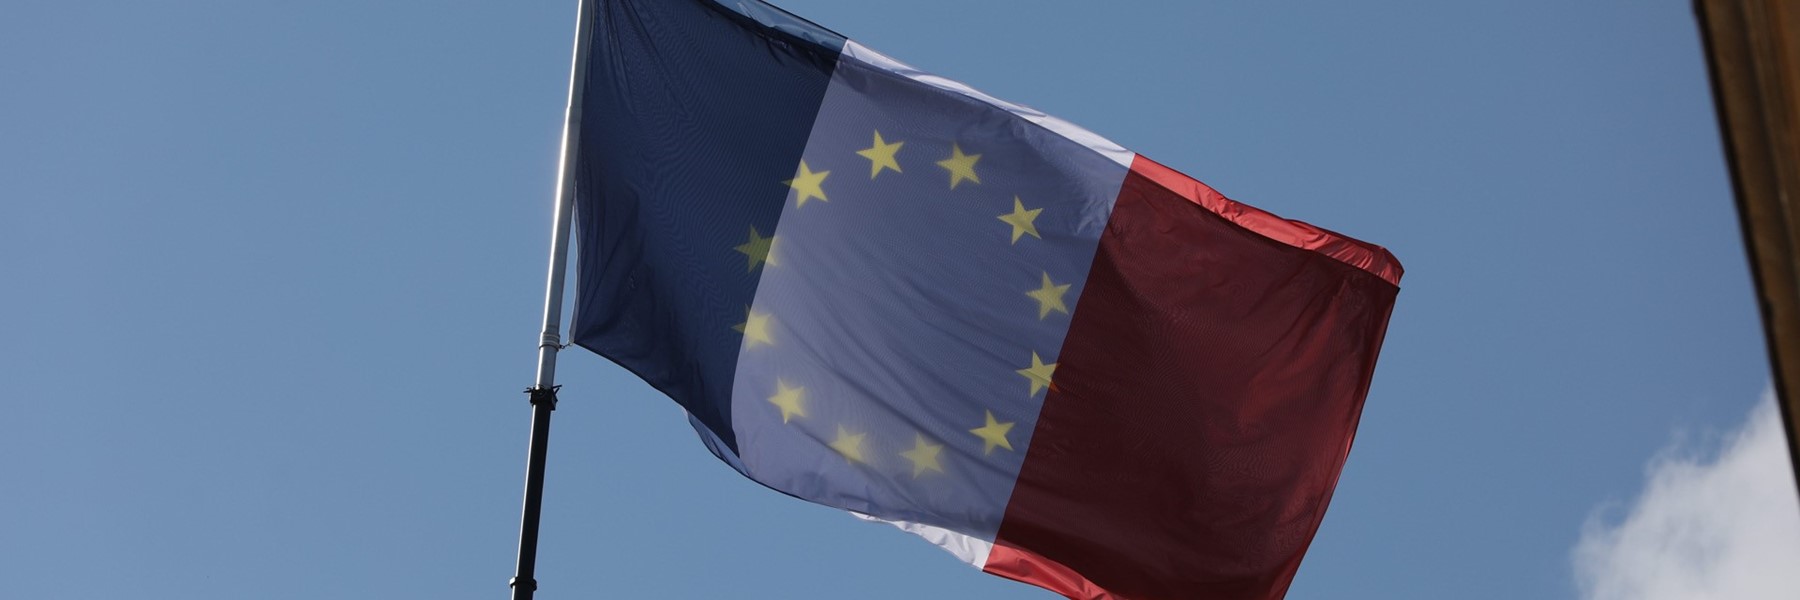 Foto: Französiche und europäische Flaggen. ©illustrez-vous